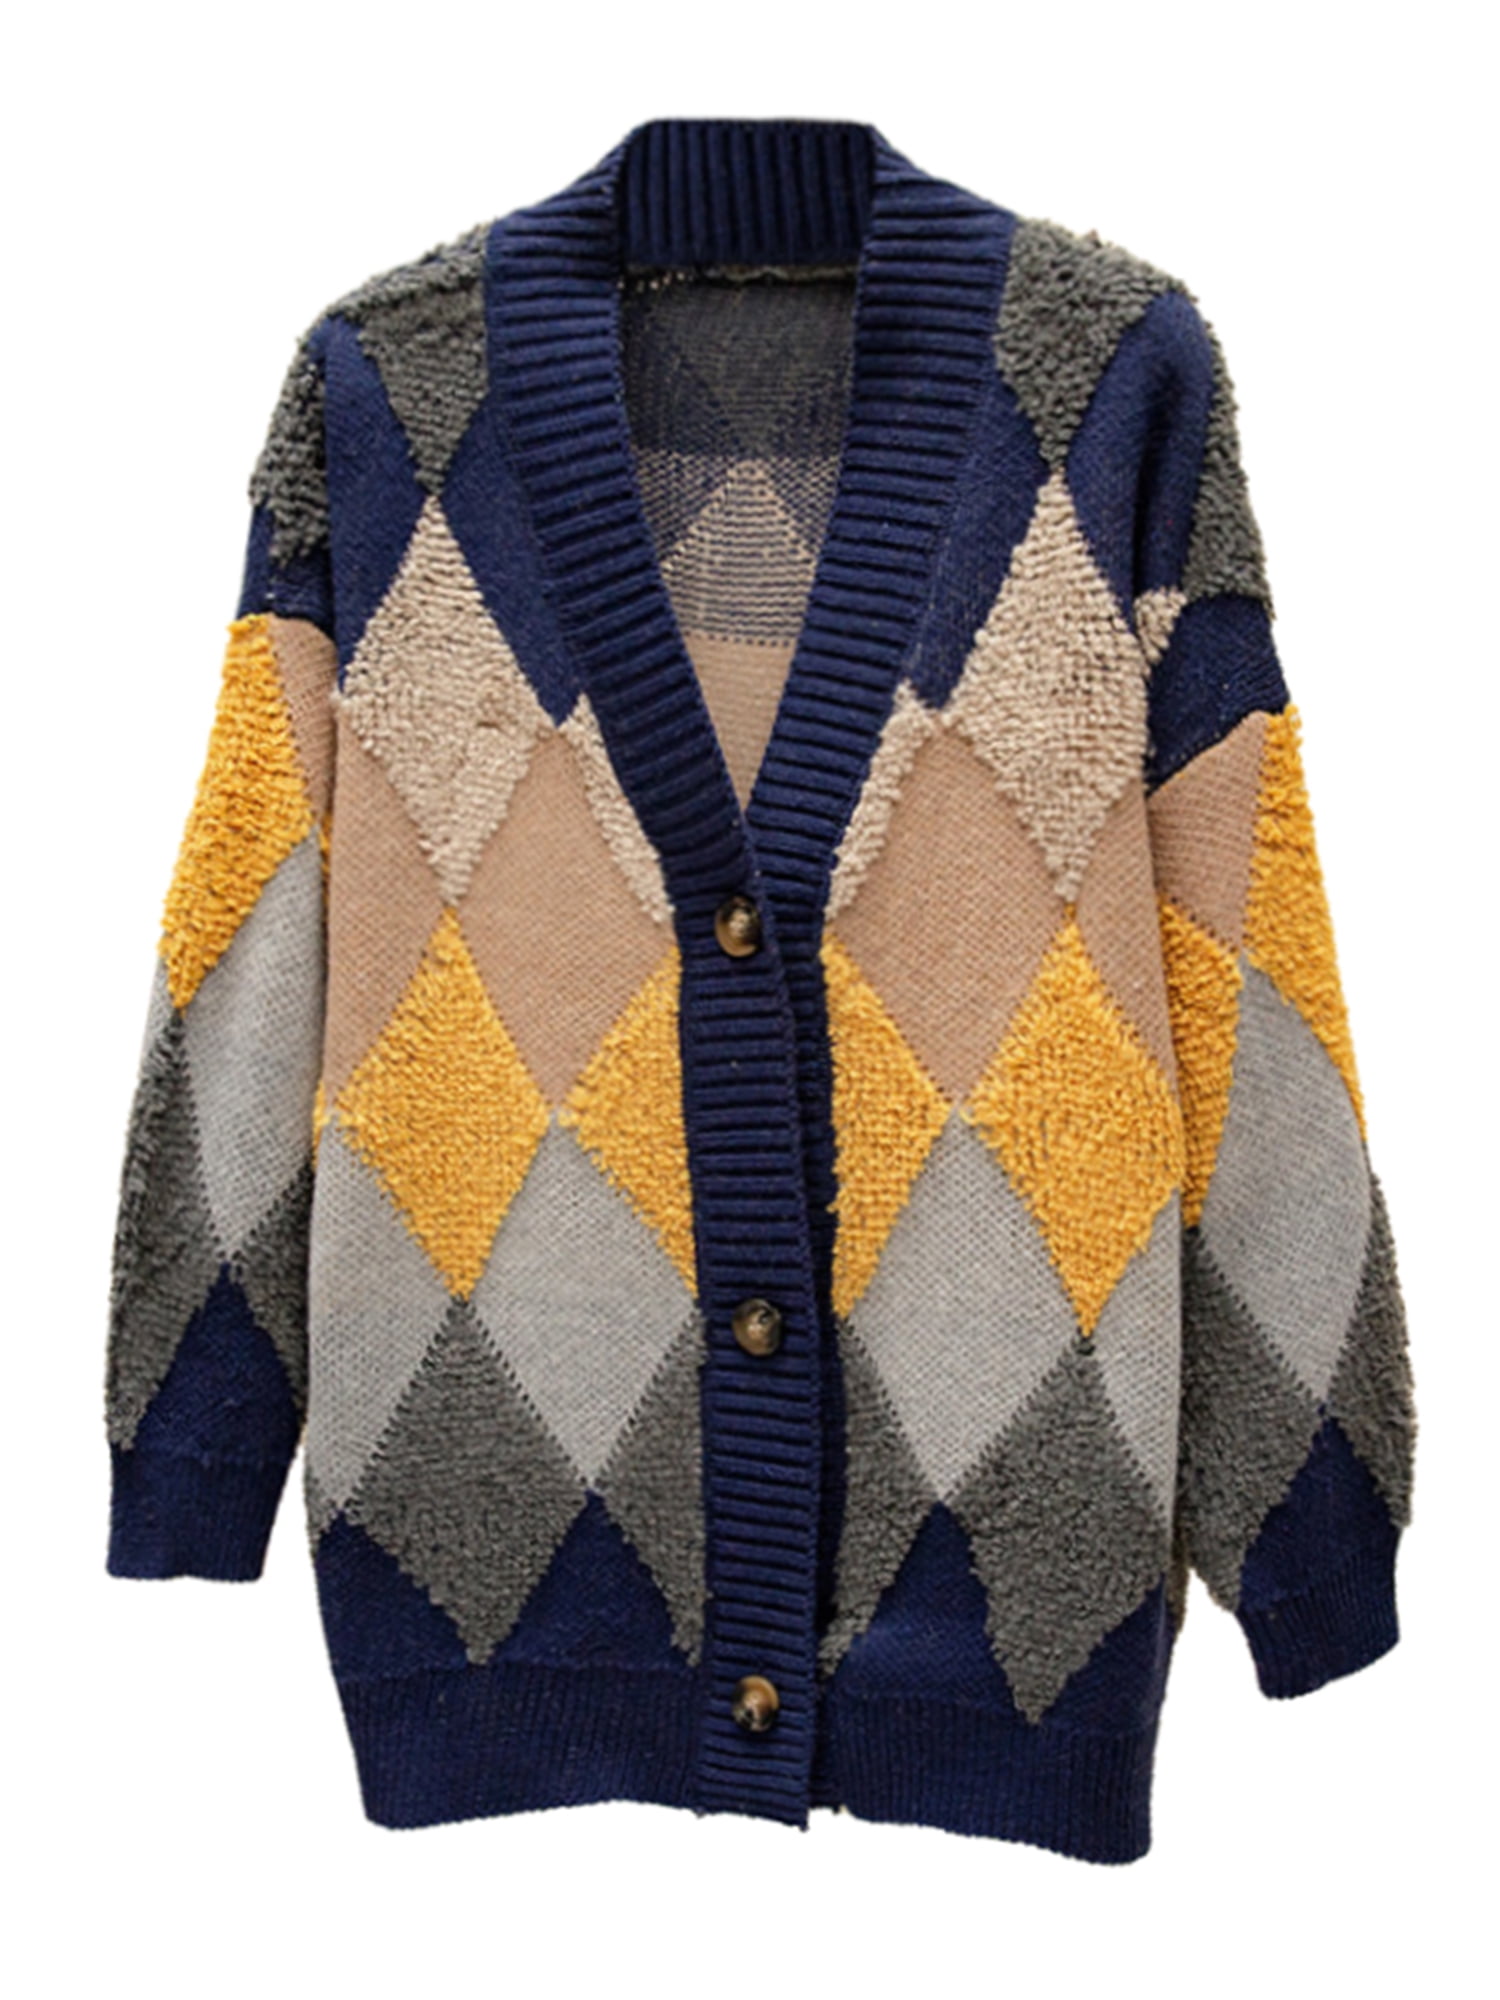 Eyicmarn Women's Argyle Preppy Knit Cardigan E-Girls 90s Long Sleeve Button  Knitwear Y2K Sweater Tops Outwear